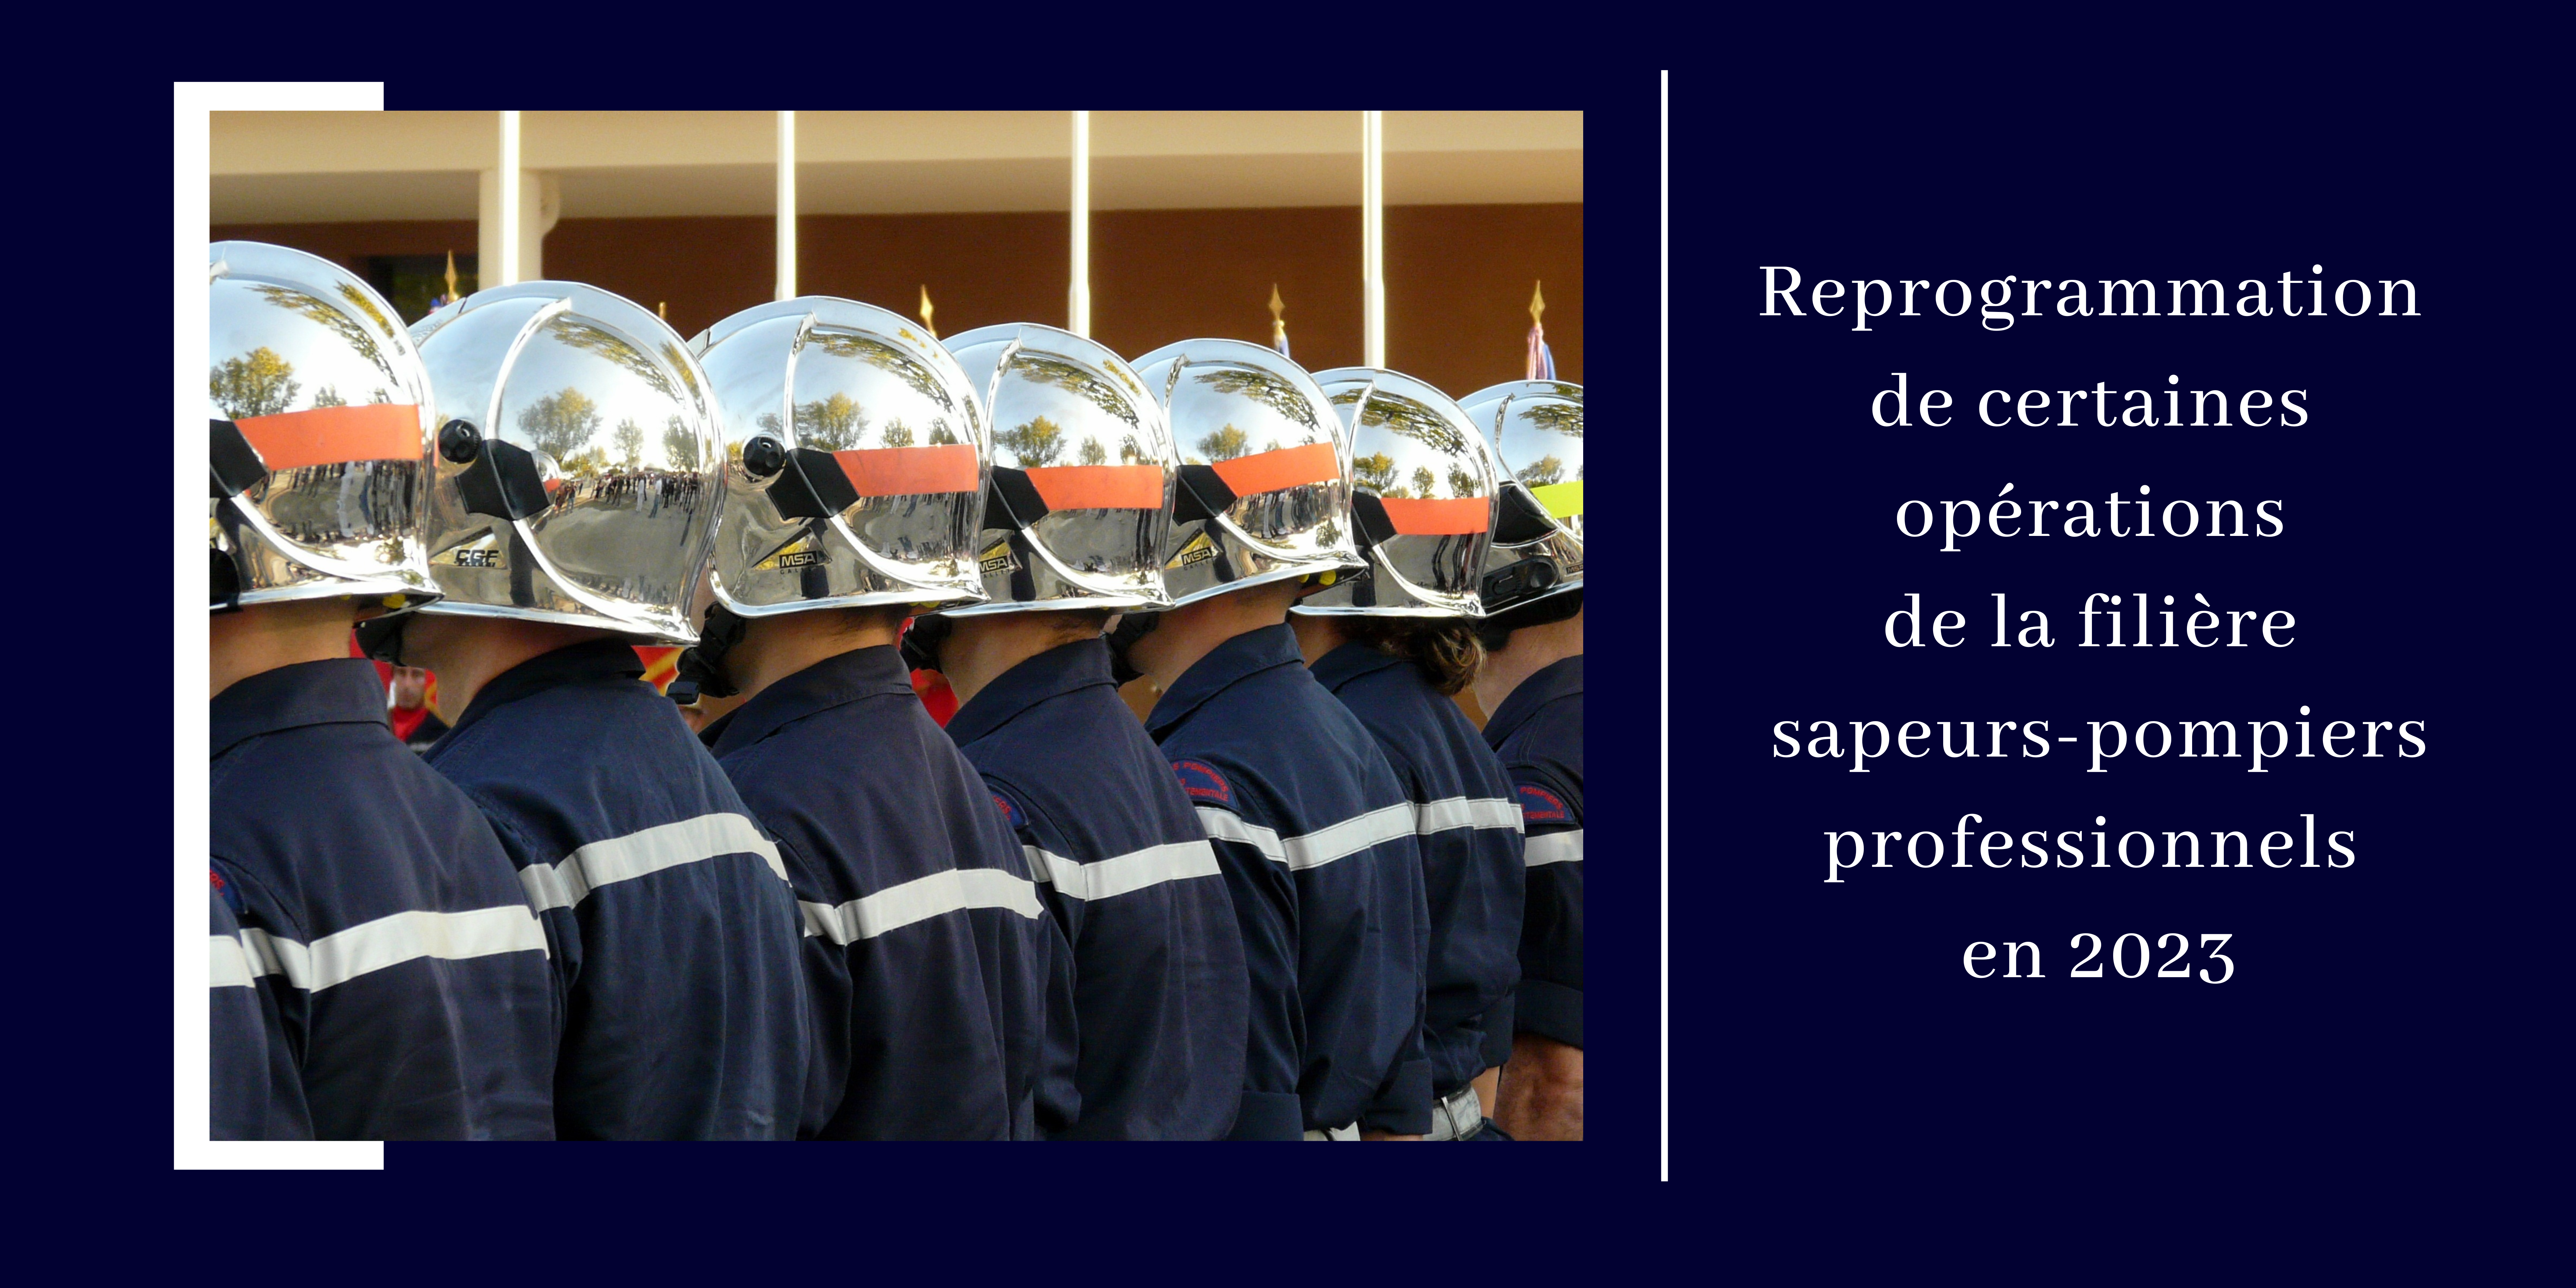 Reprogrammation de certaines opérations de la filière sapeurs-pompiers professionnels en 2023